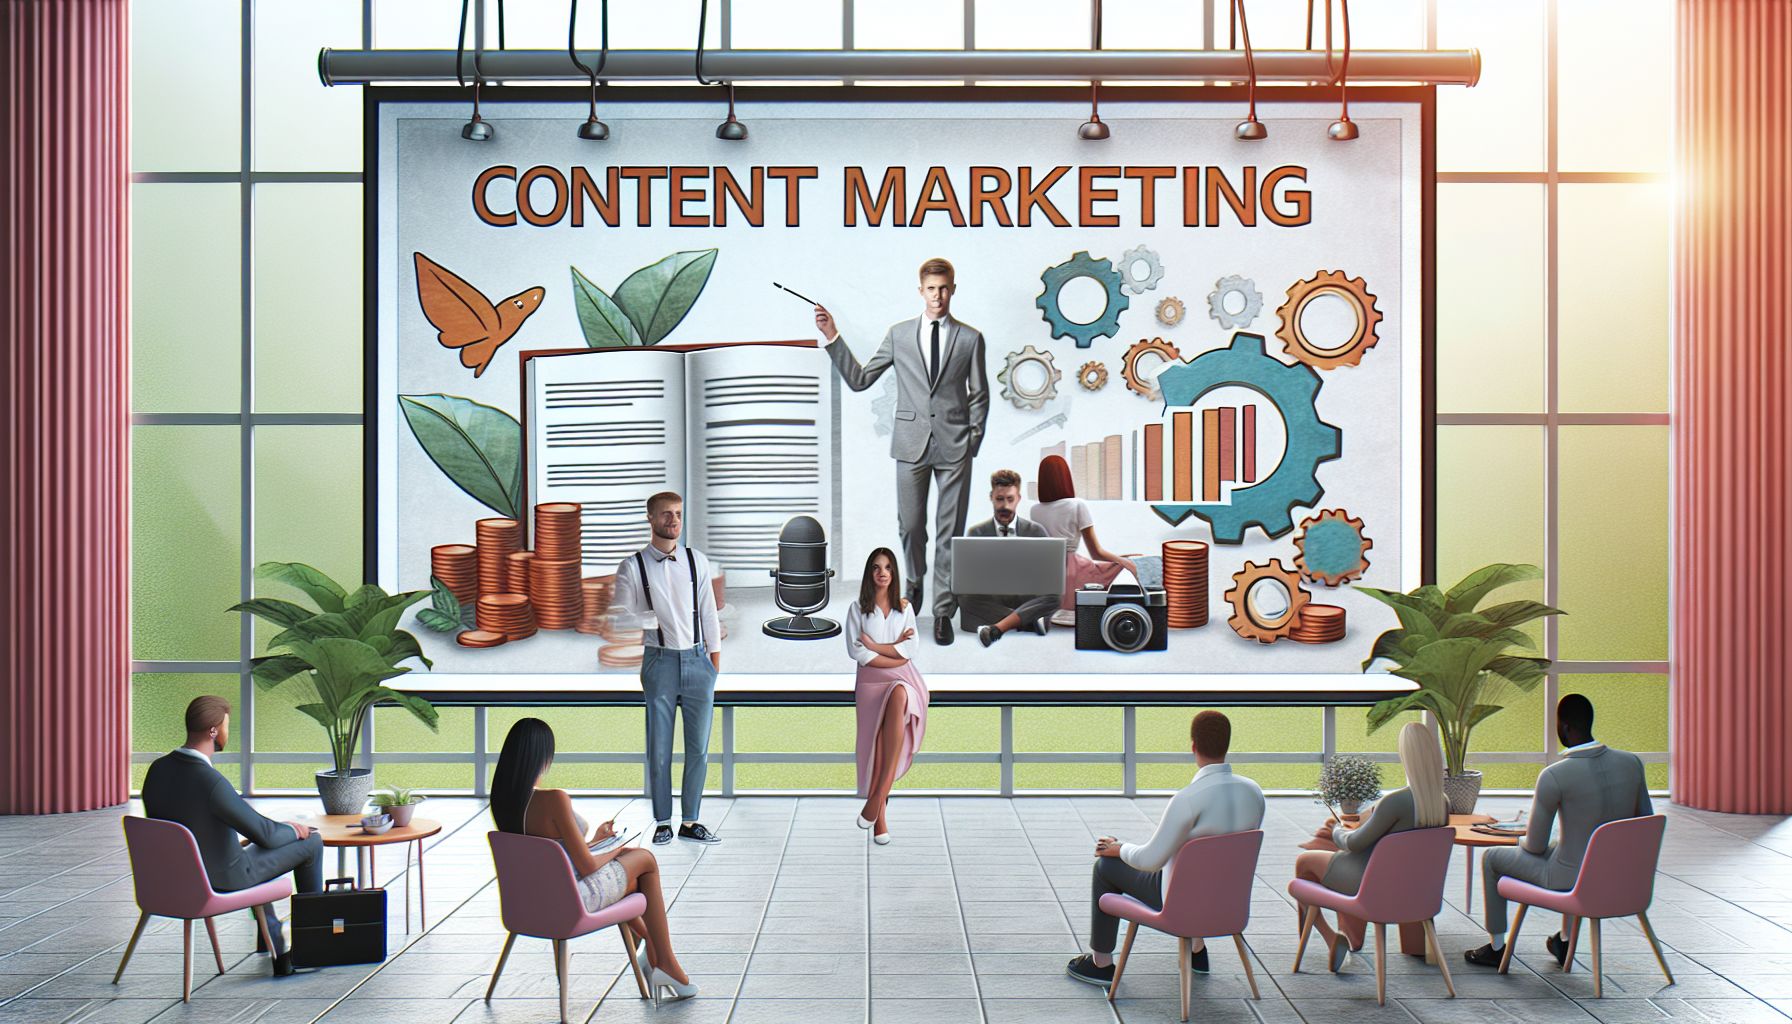 Eine Marketingagentur präsentiert ihre Content-Marketing-Dienstleistungen